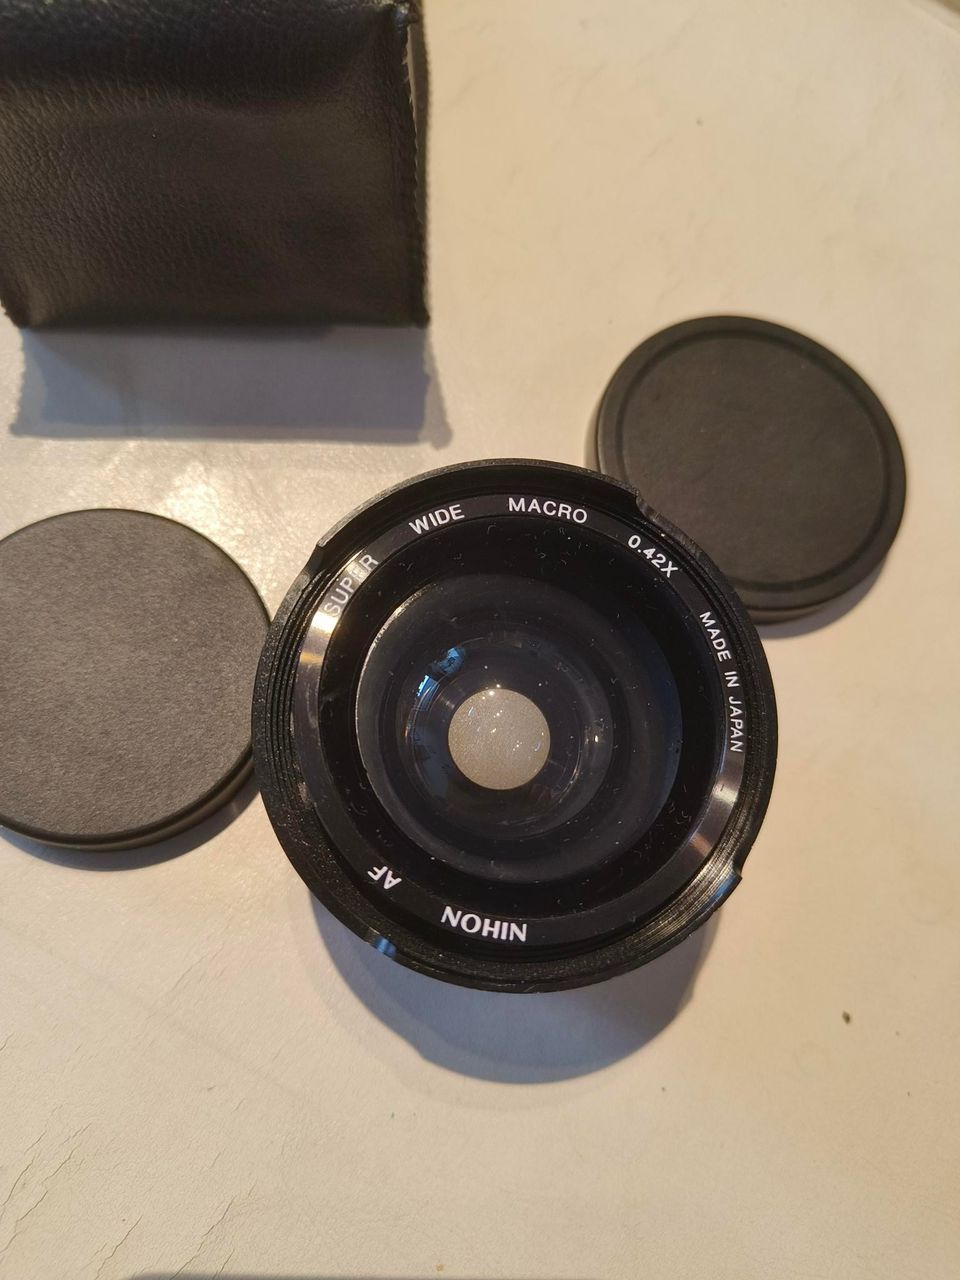 Nihon Super Wide MACRO 0.42X  AF Lens